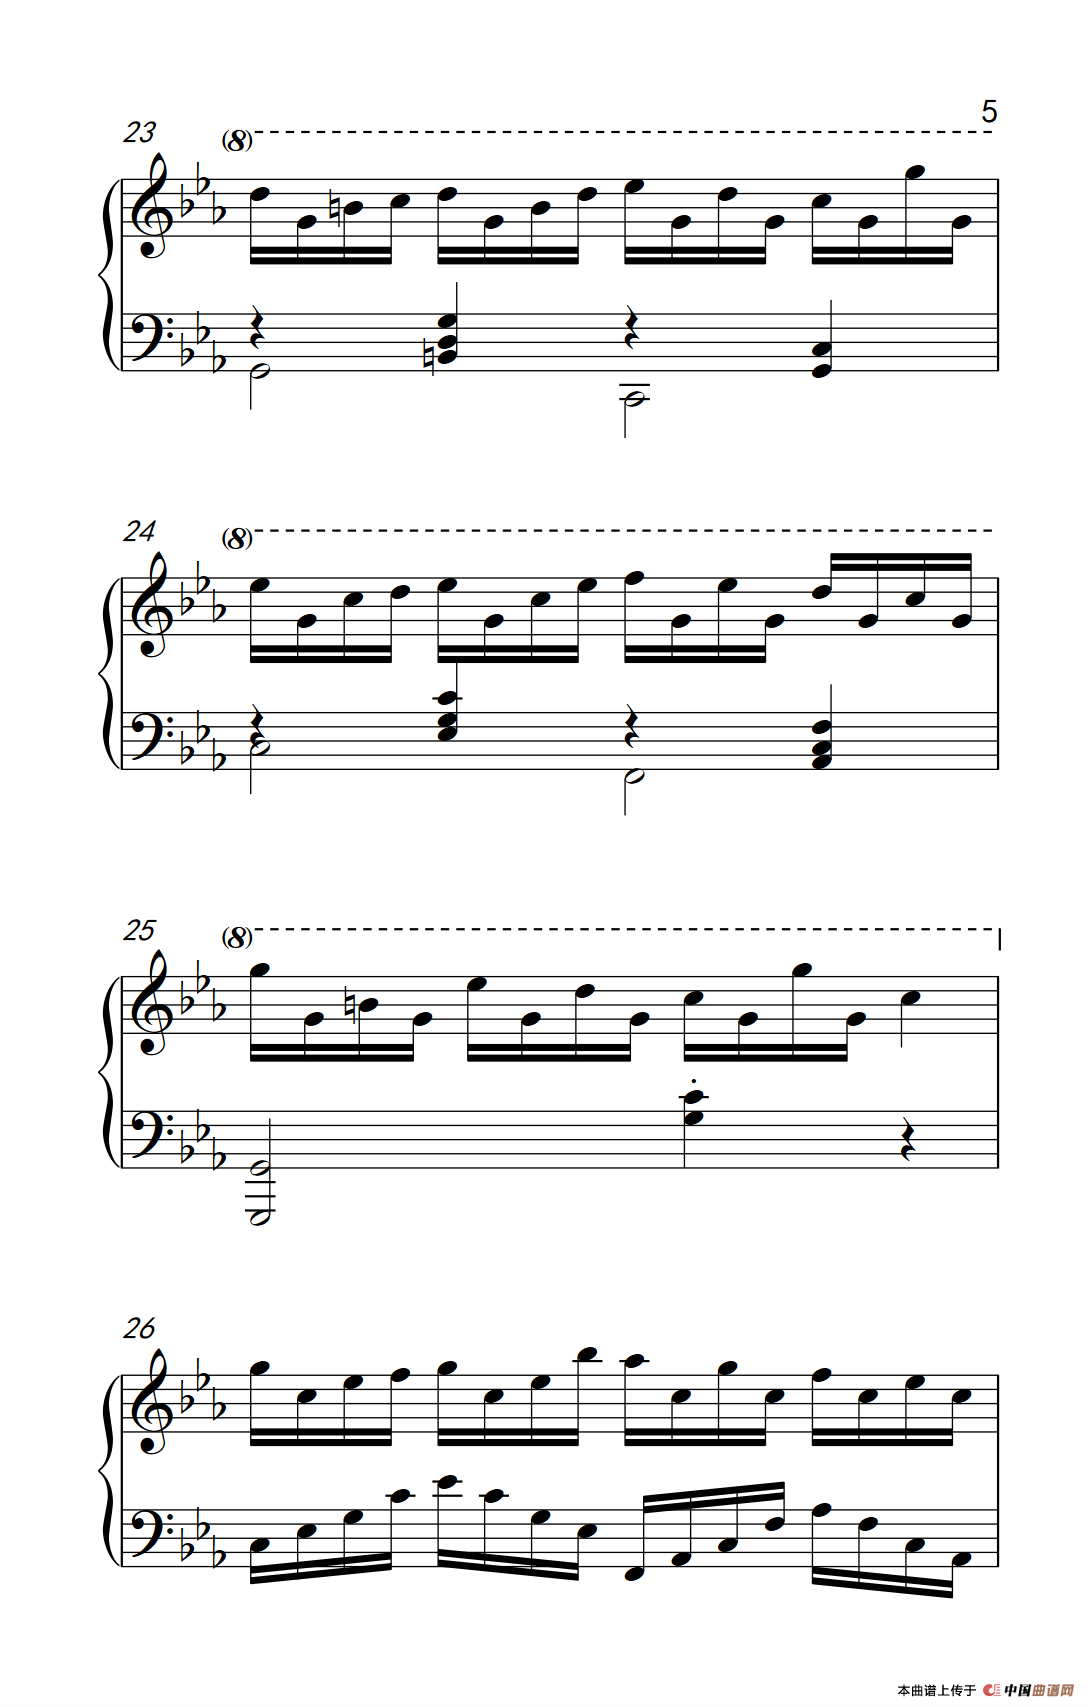 克罗地亚狂想曲钢琴谱-真正的纯钢琴版-马克西姆-Maksim·Mrvica-简谱网